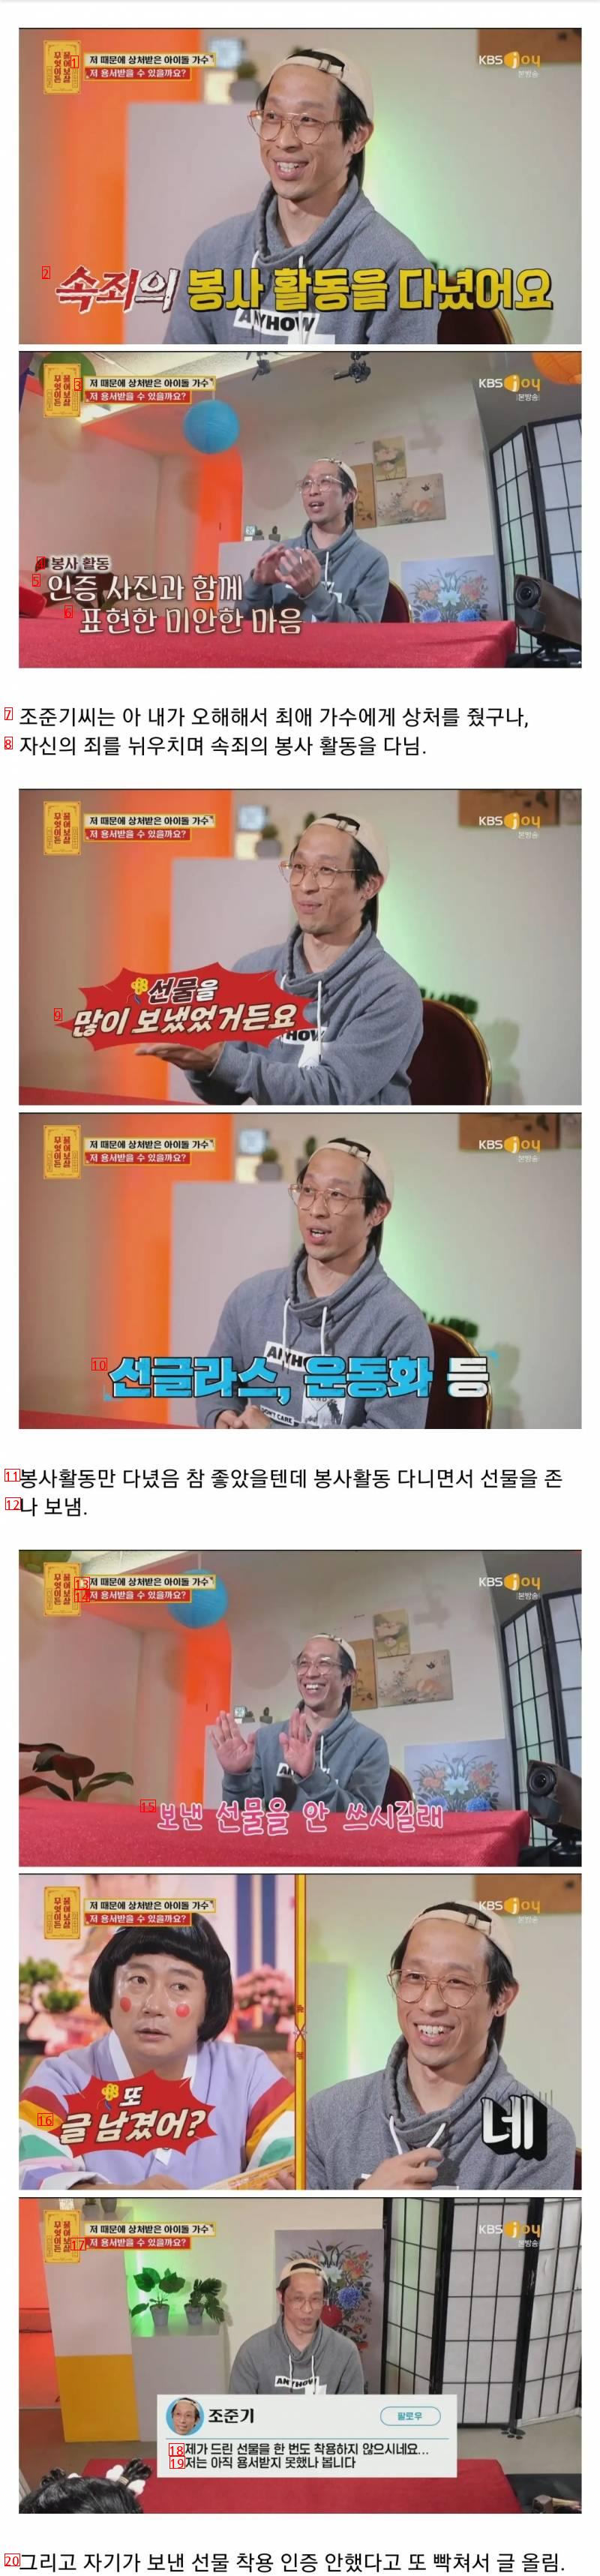 현재 난리난 물어보살 최애 아이돌 저격남 충격반전.JPG